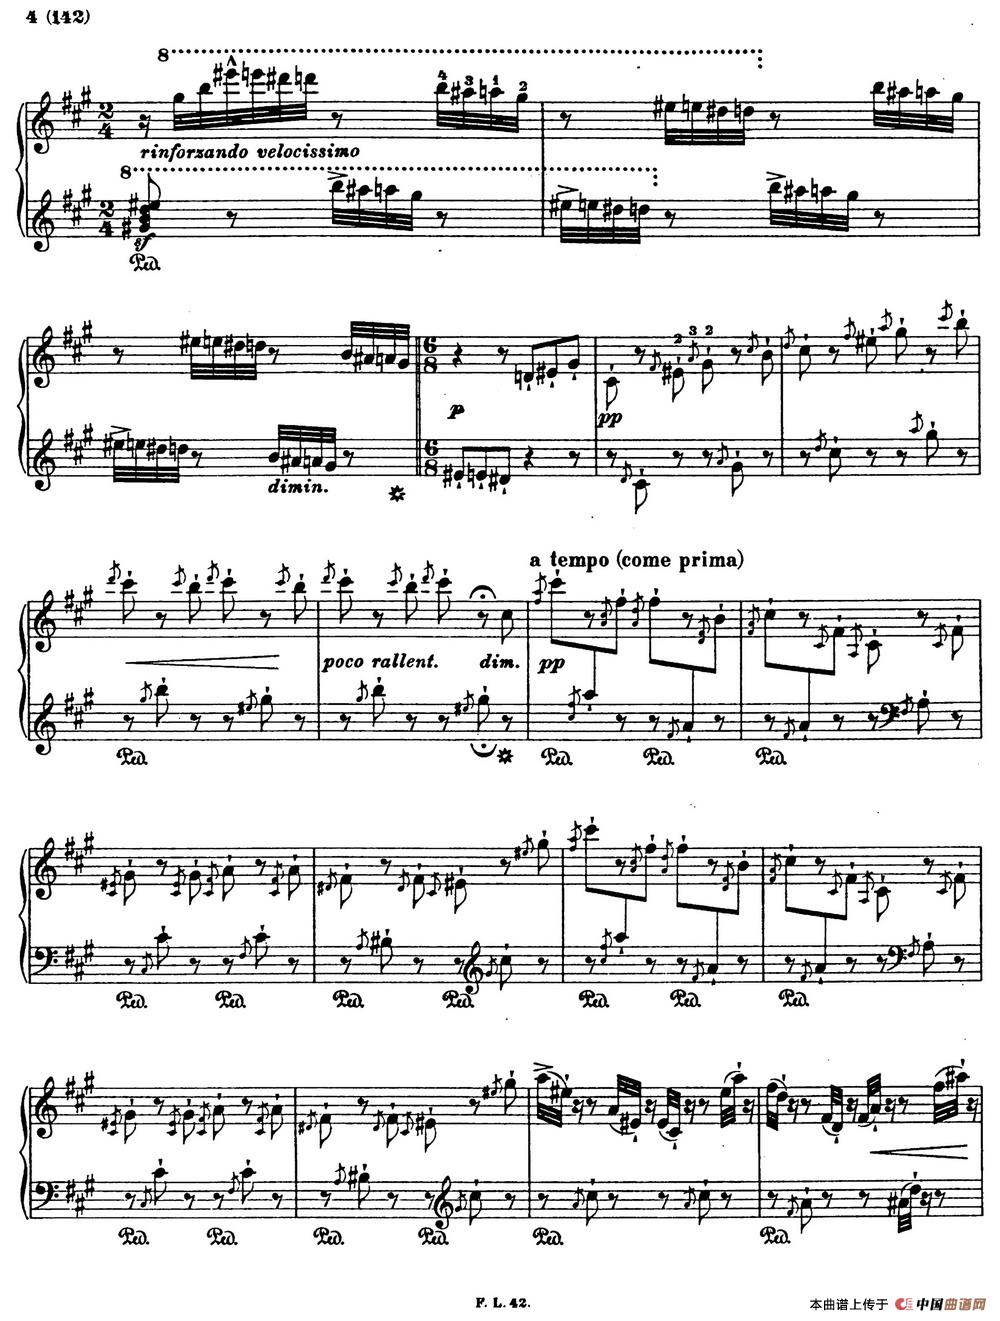 李斯特音乐会练习曲 S145（1 S145 森林的呼啸 Waldesrauschen）(1)_Etudes de Concert s145 Liszt_页面_03.jpg